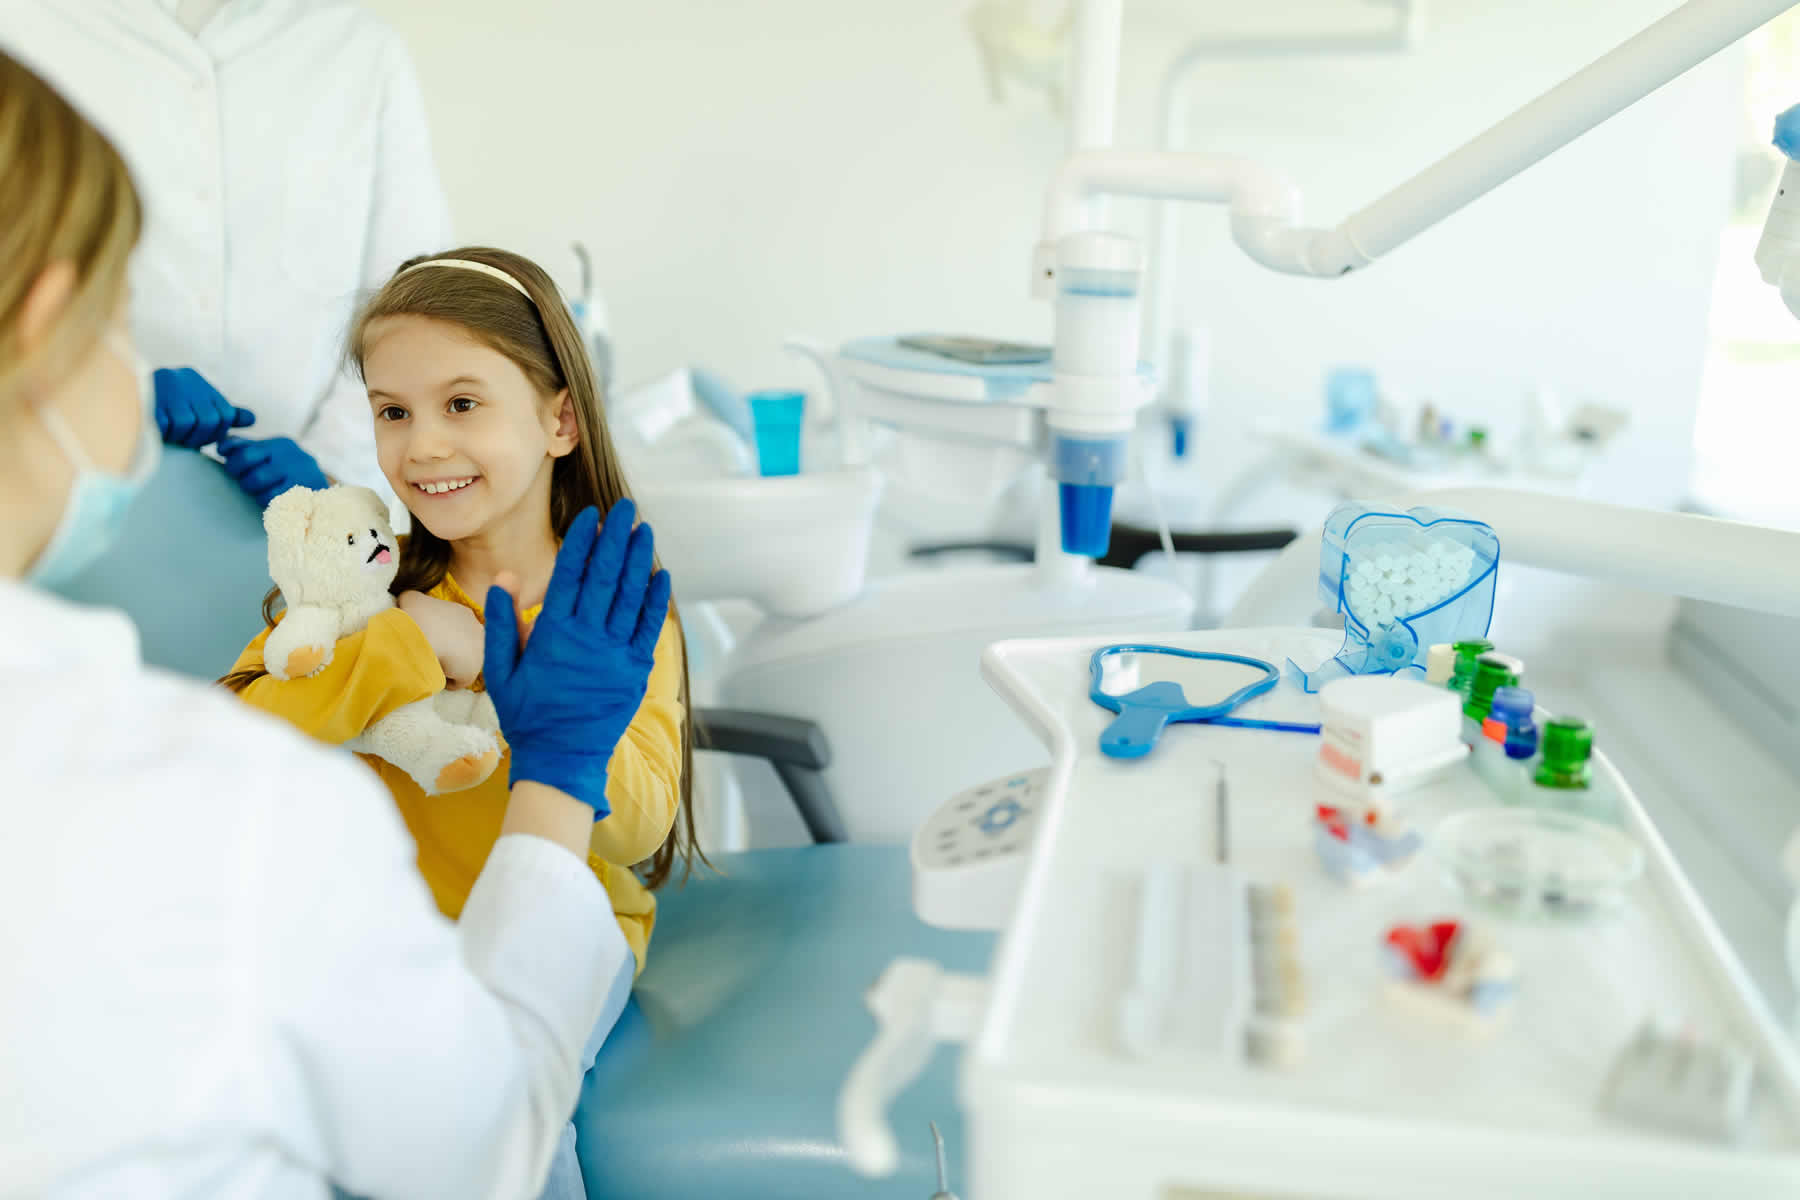 Dental Care for Children